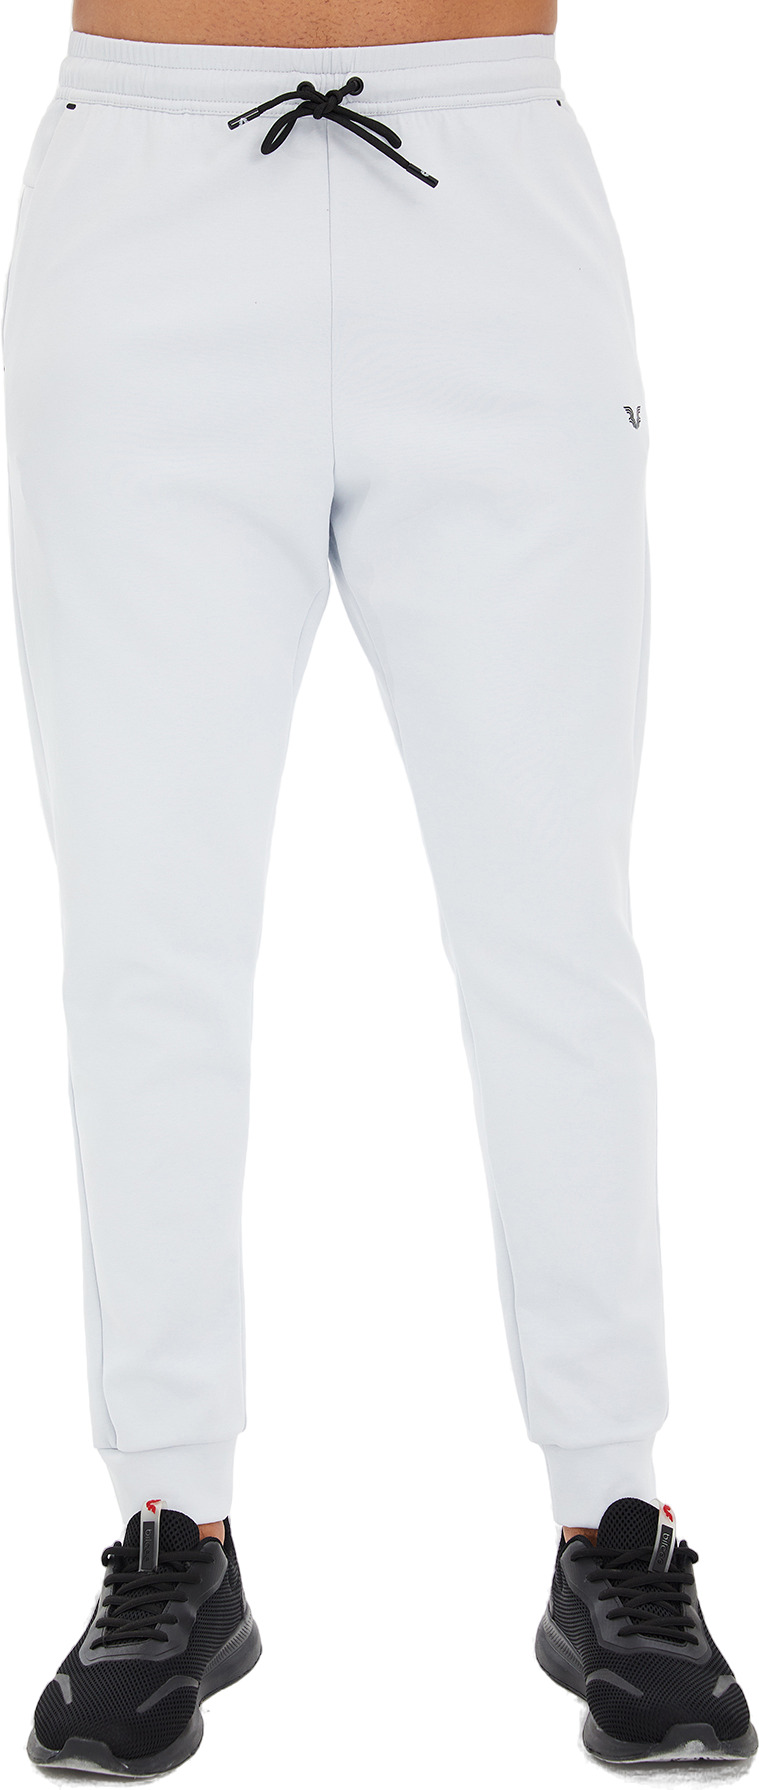 Спортивные брюки мужские Bilcee Men Knitting Pants белые M